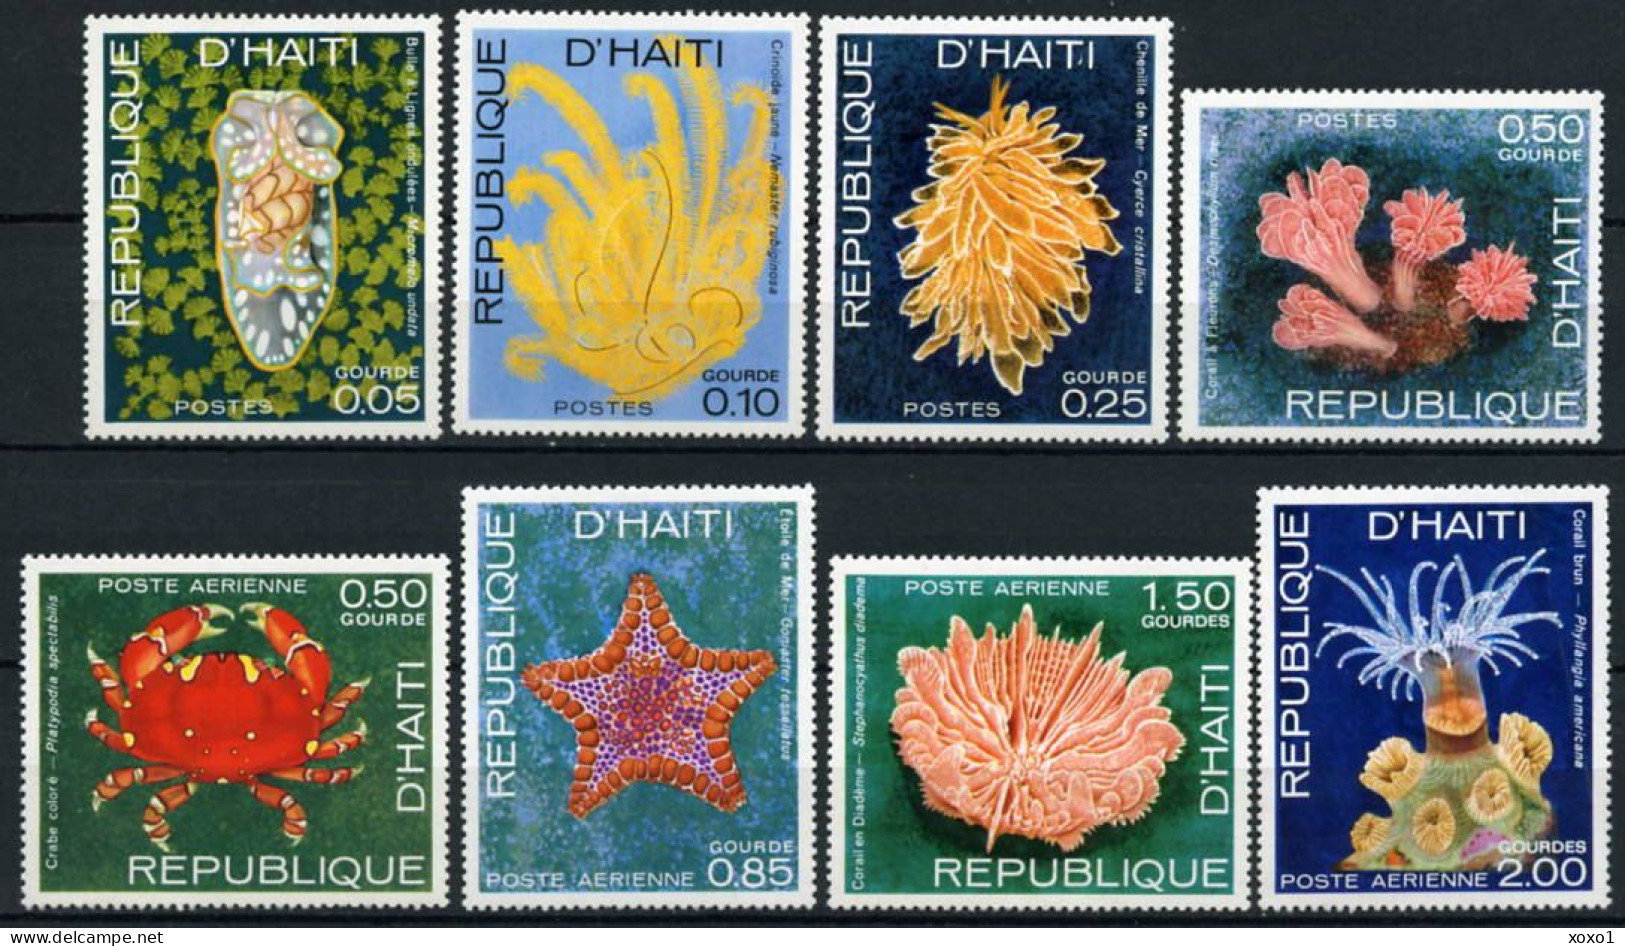 Haiti 1973 MiNr. 1225 - 1232  Marine Life, Crustaceans 8v  MNH** 3.20 € - Meereswelt